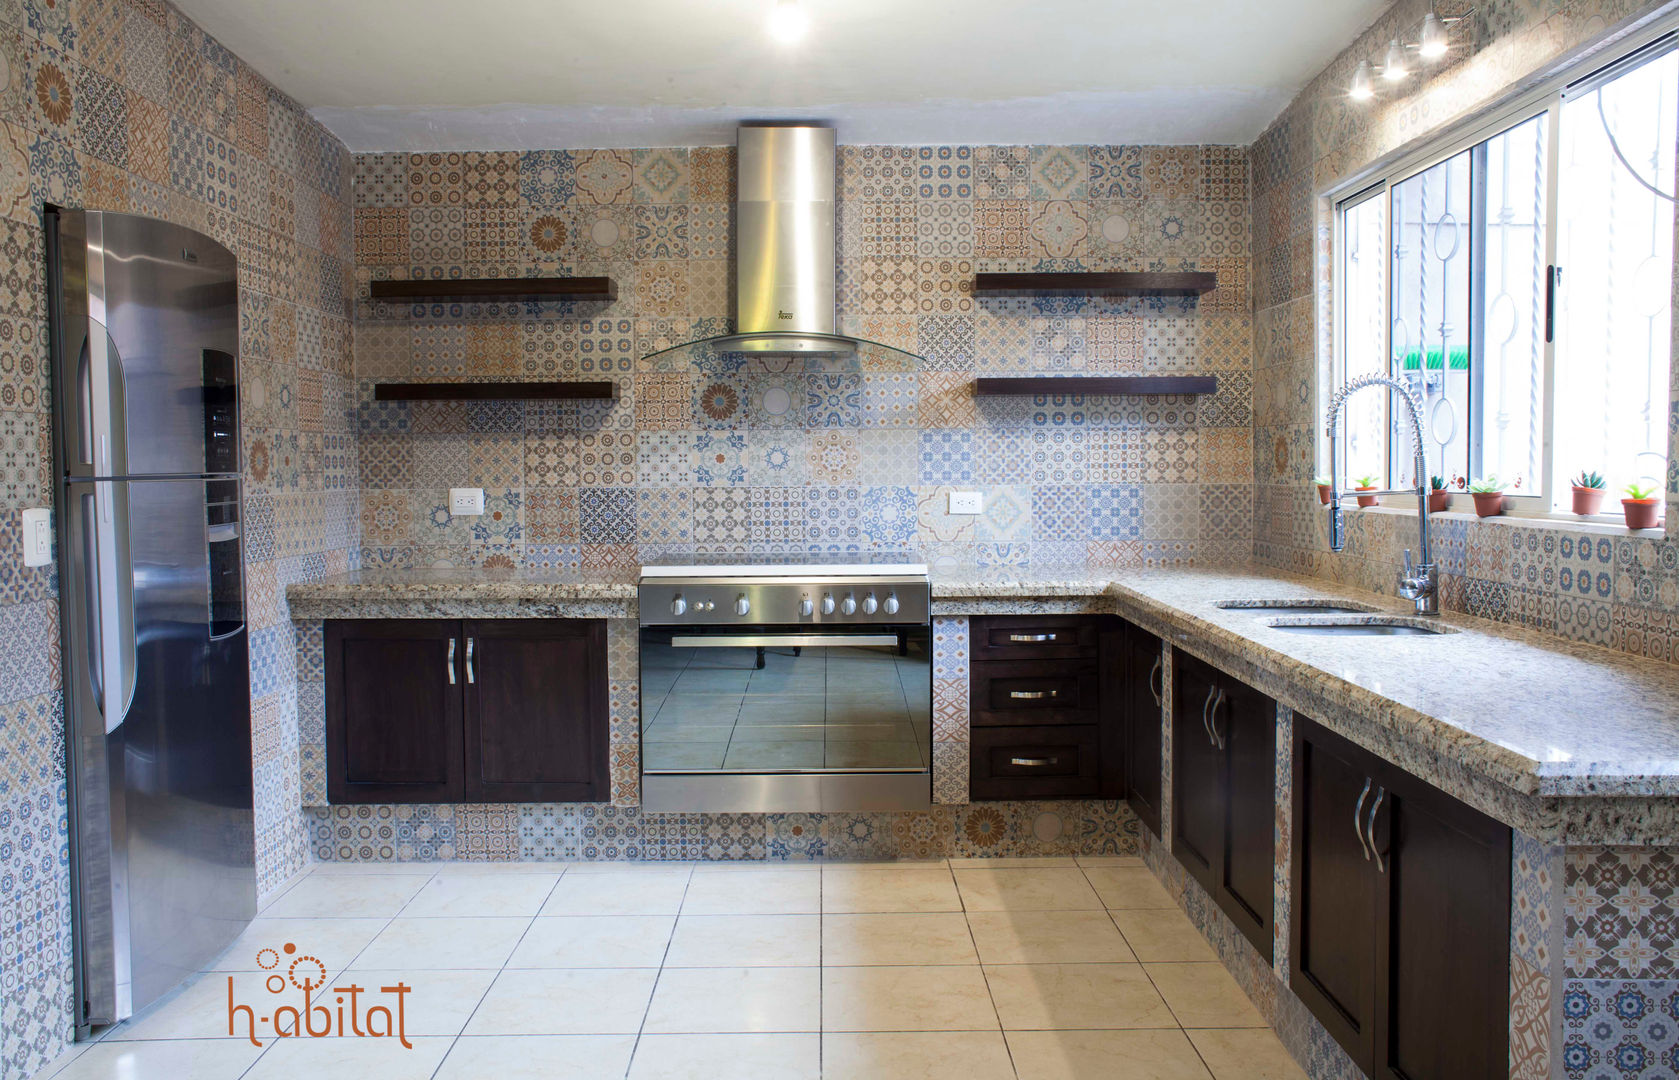 Cocina Moderna con azulejo Vintage, H-abitat Diseño & Interiores H-abitat Diseño & Interiores Kitchen Tiles